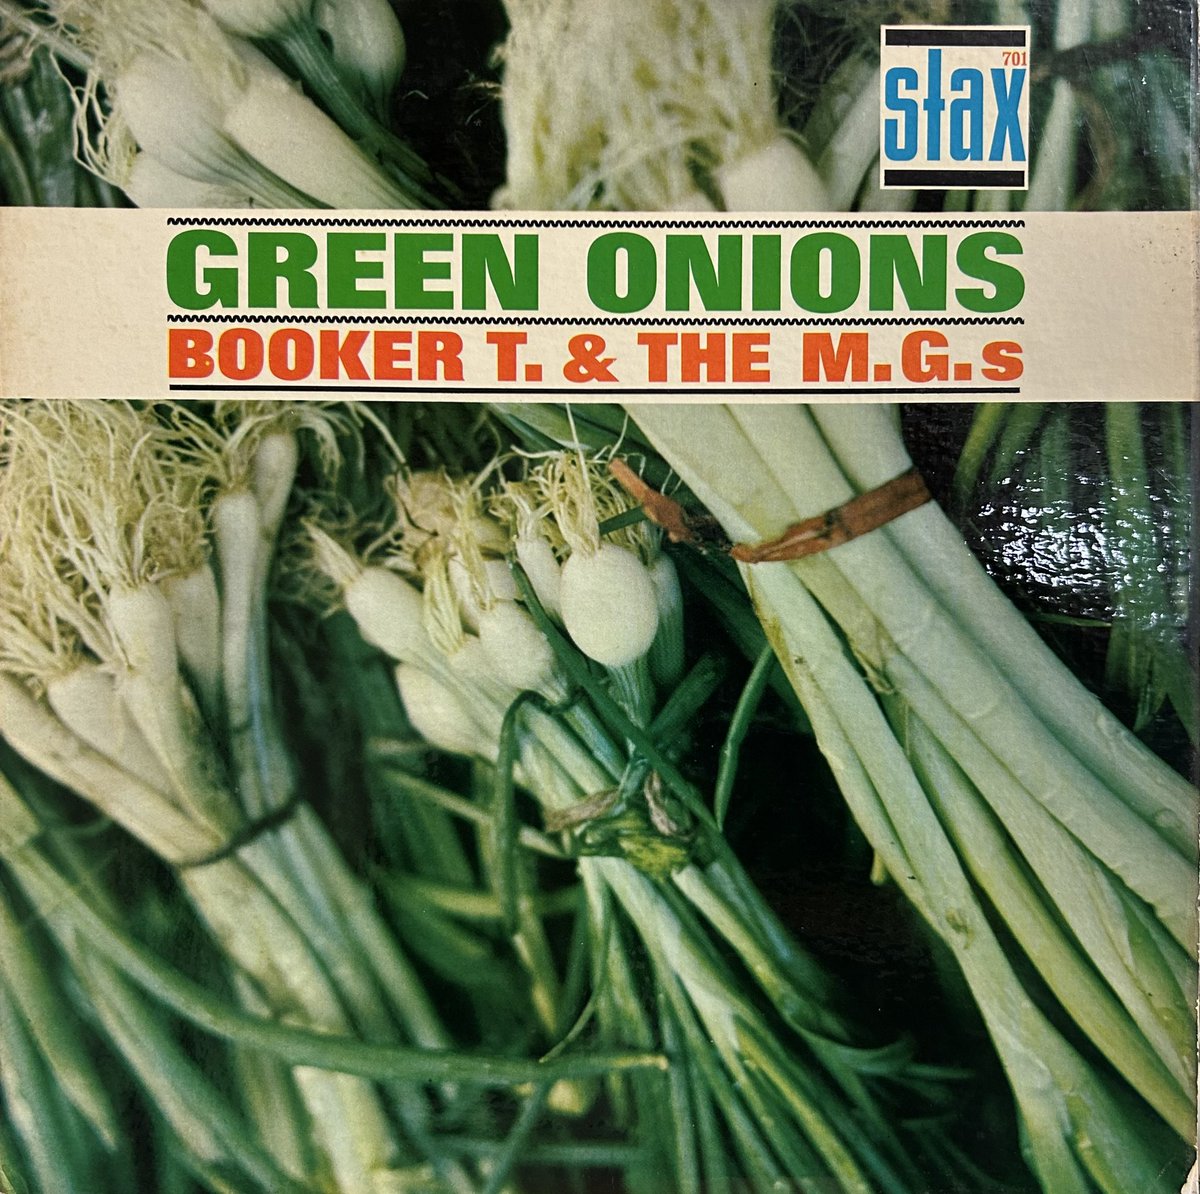 今日の1曲！
Booker T. & The M.G's,
Green Onions.
youtube.com/watch?v=VD6izV…
#soul
#memphissounds 
#staxvoltrecords 
#bookertandthemgs